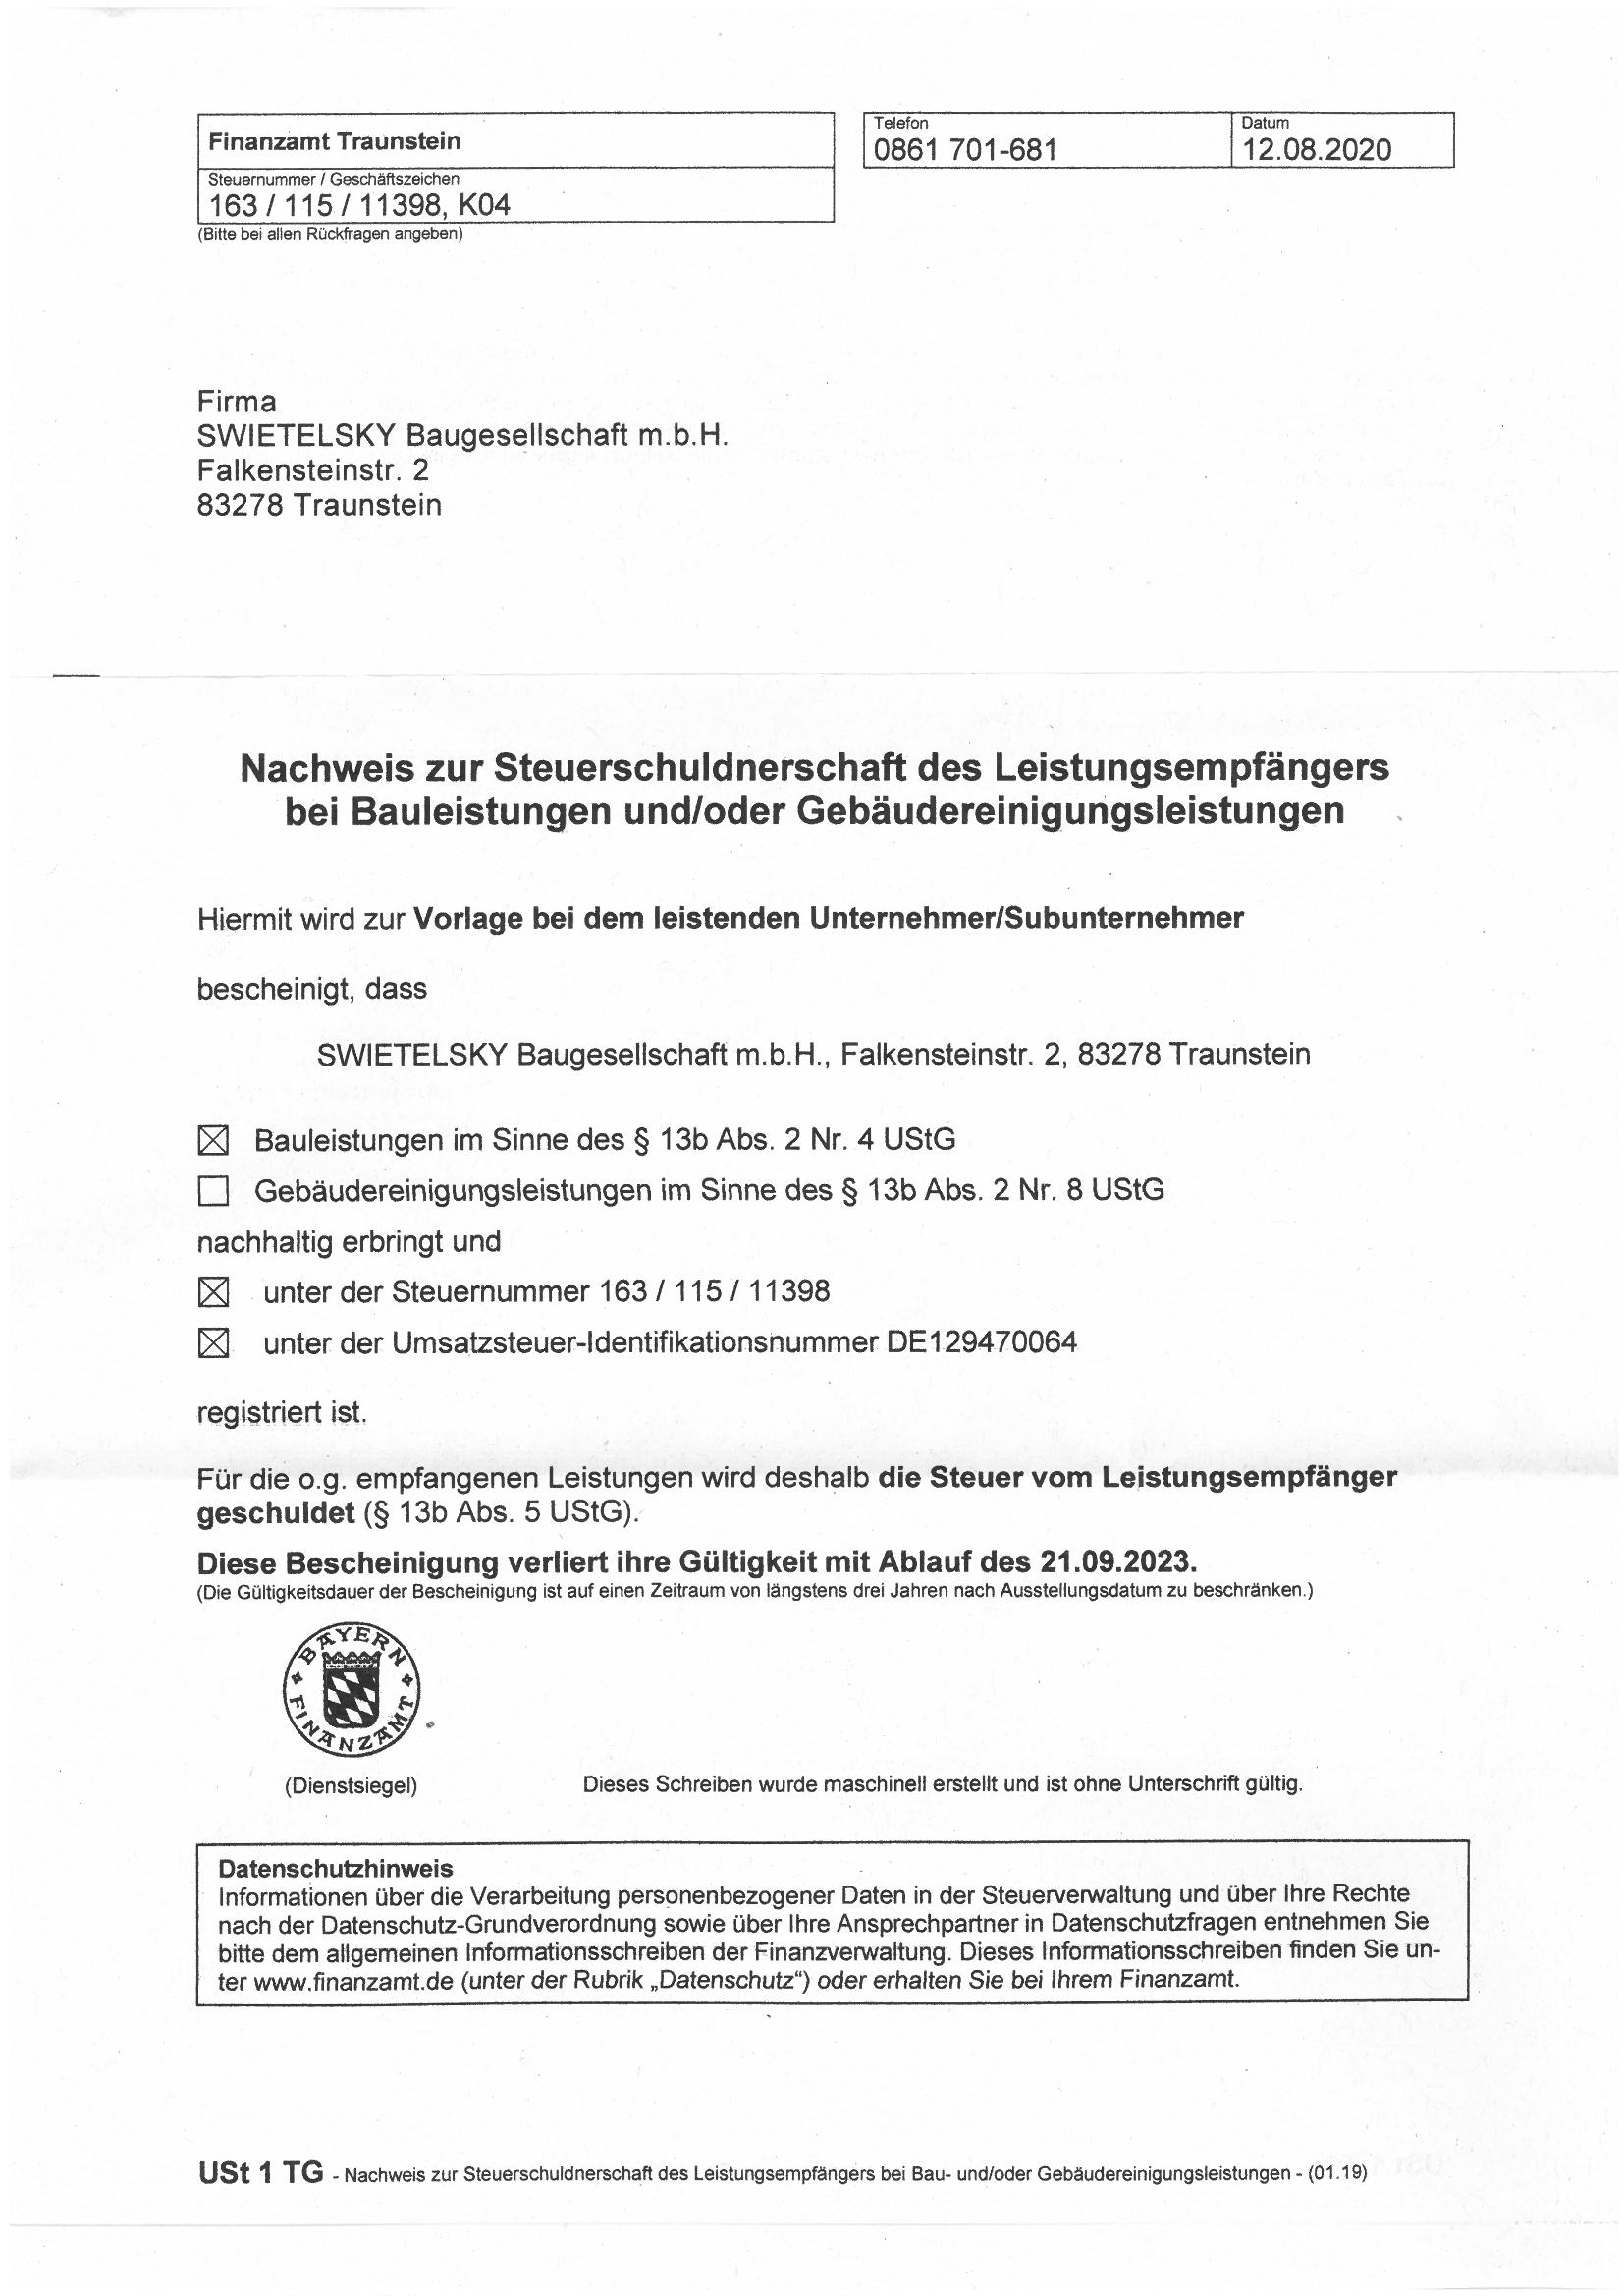 Nachweis Steuerschuld Bei Bauleistungen SWIETELSKY Bauges.M.B.H. Mit Sitz In Traunstein Bis 21.09.2023 1